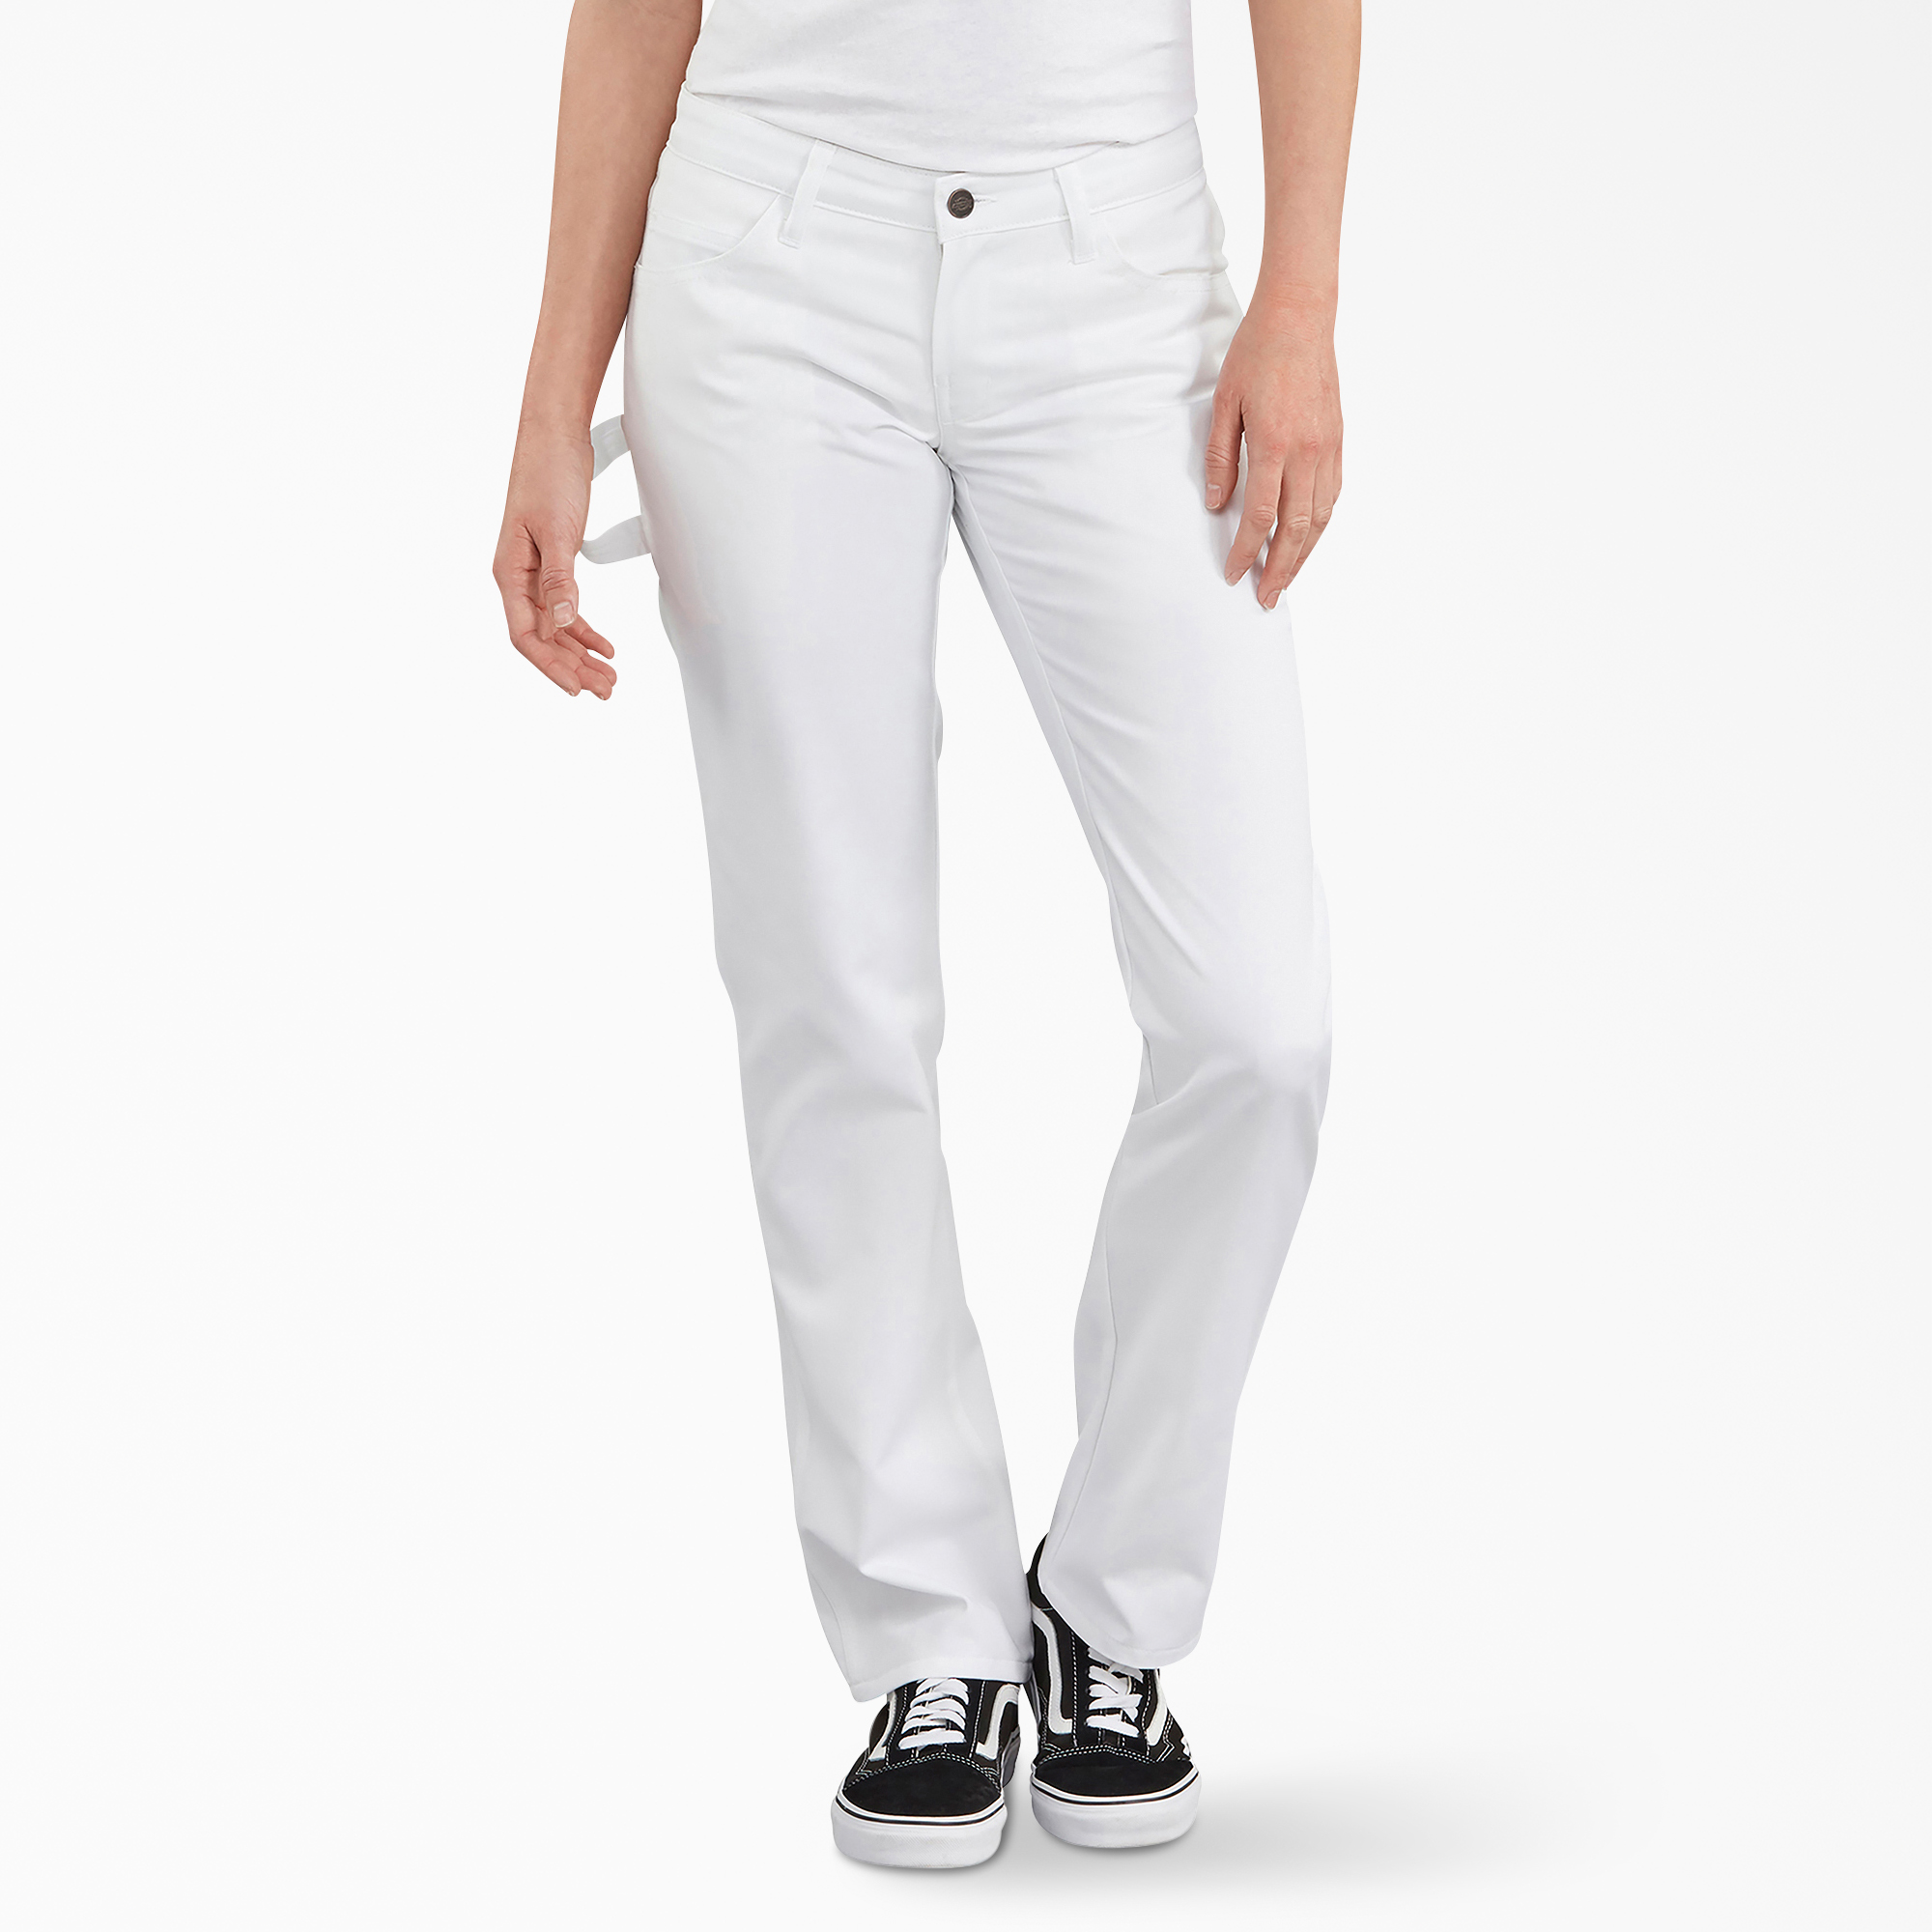 Women's FLEX Painters Utility Pants - White (WH)